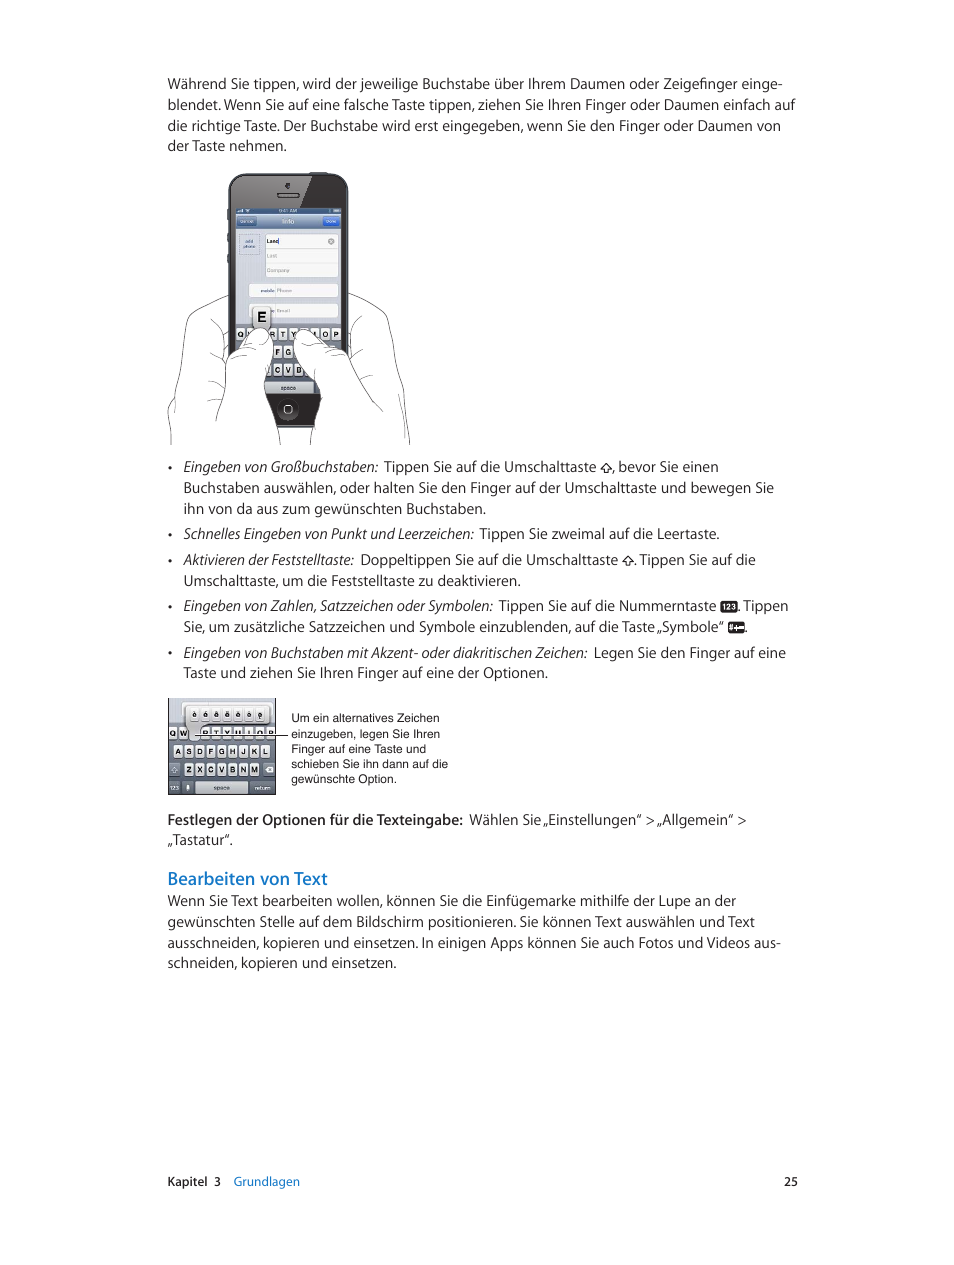 Bearbeiten von text | Apple iPhone iOS 6.1 Benutzerhandbuch | Seite 25 / 178